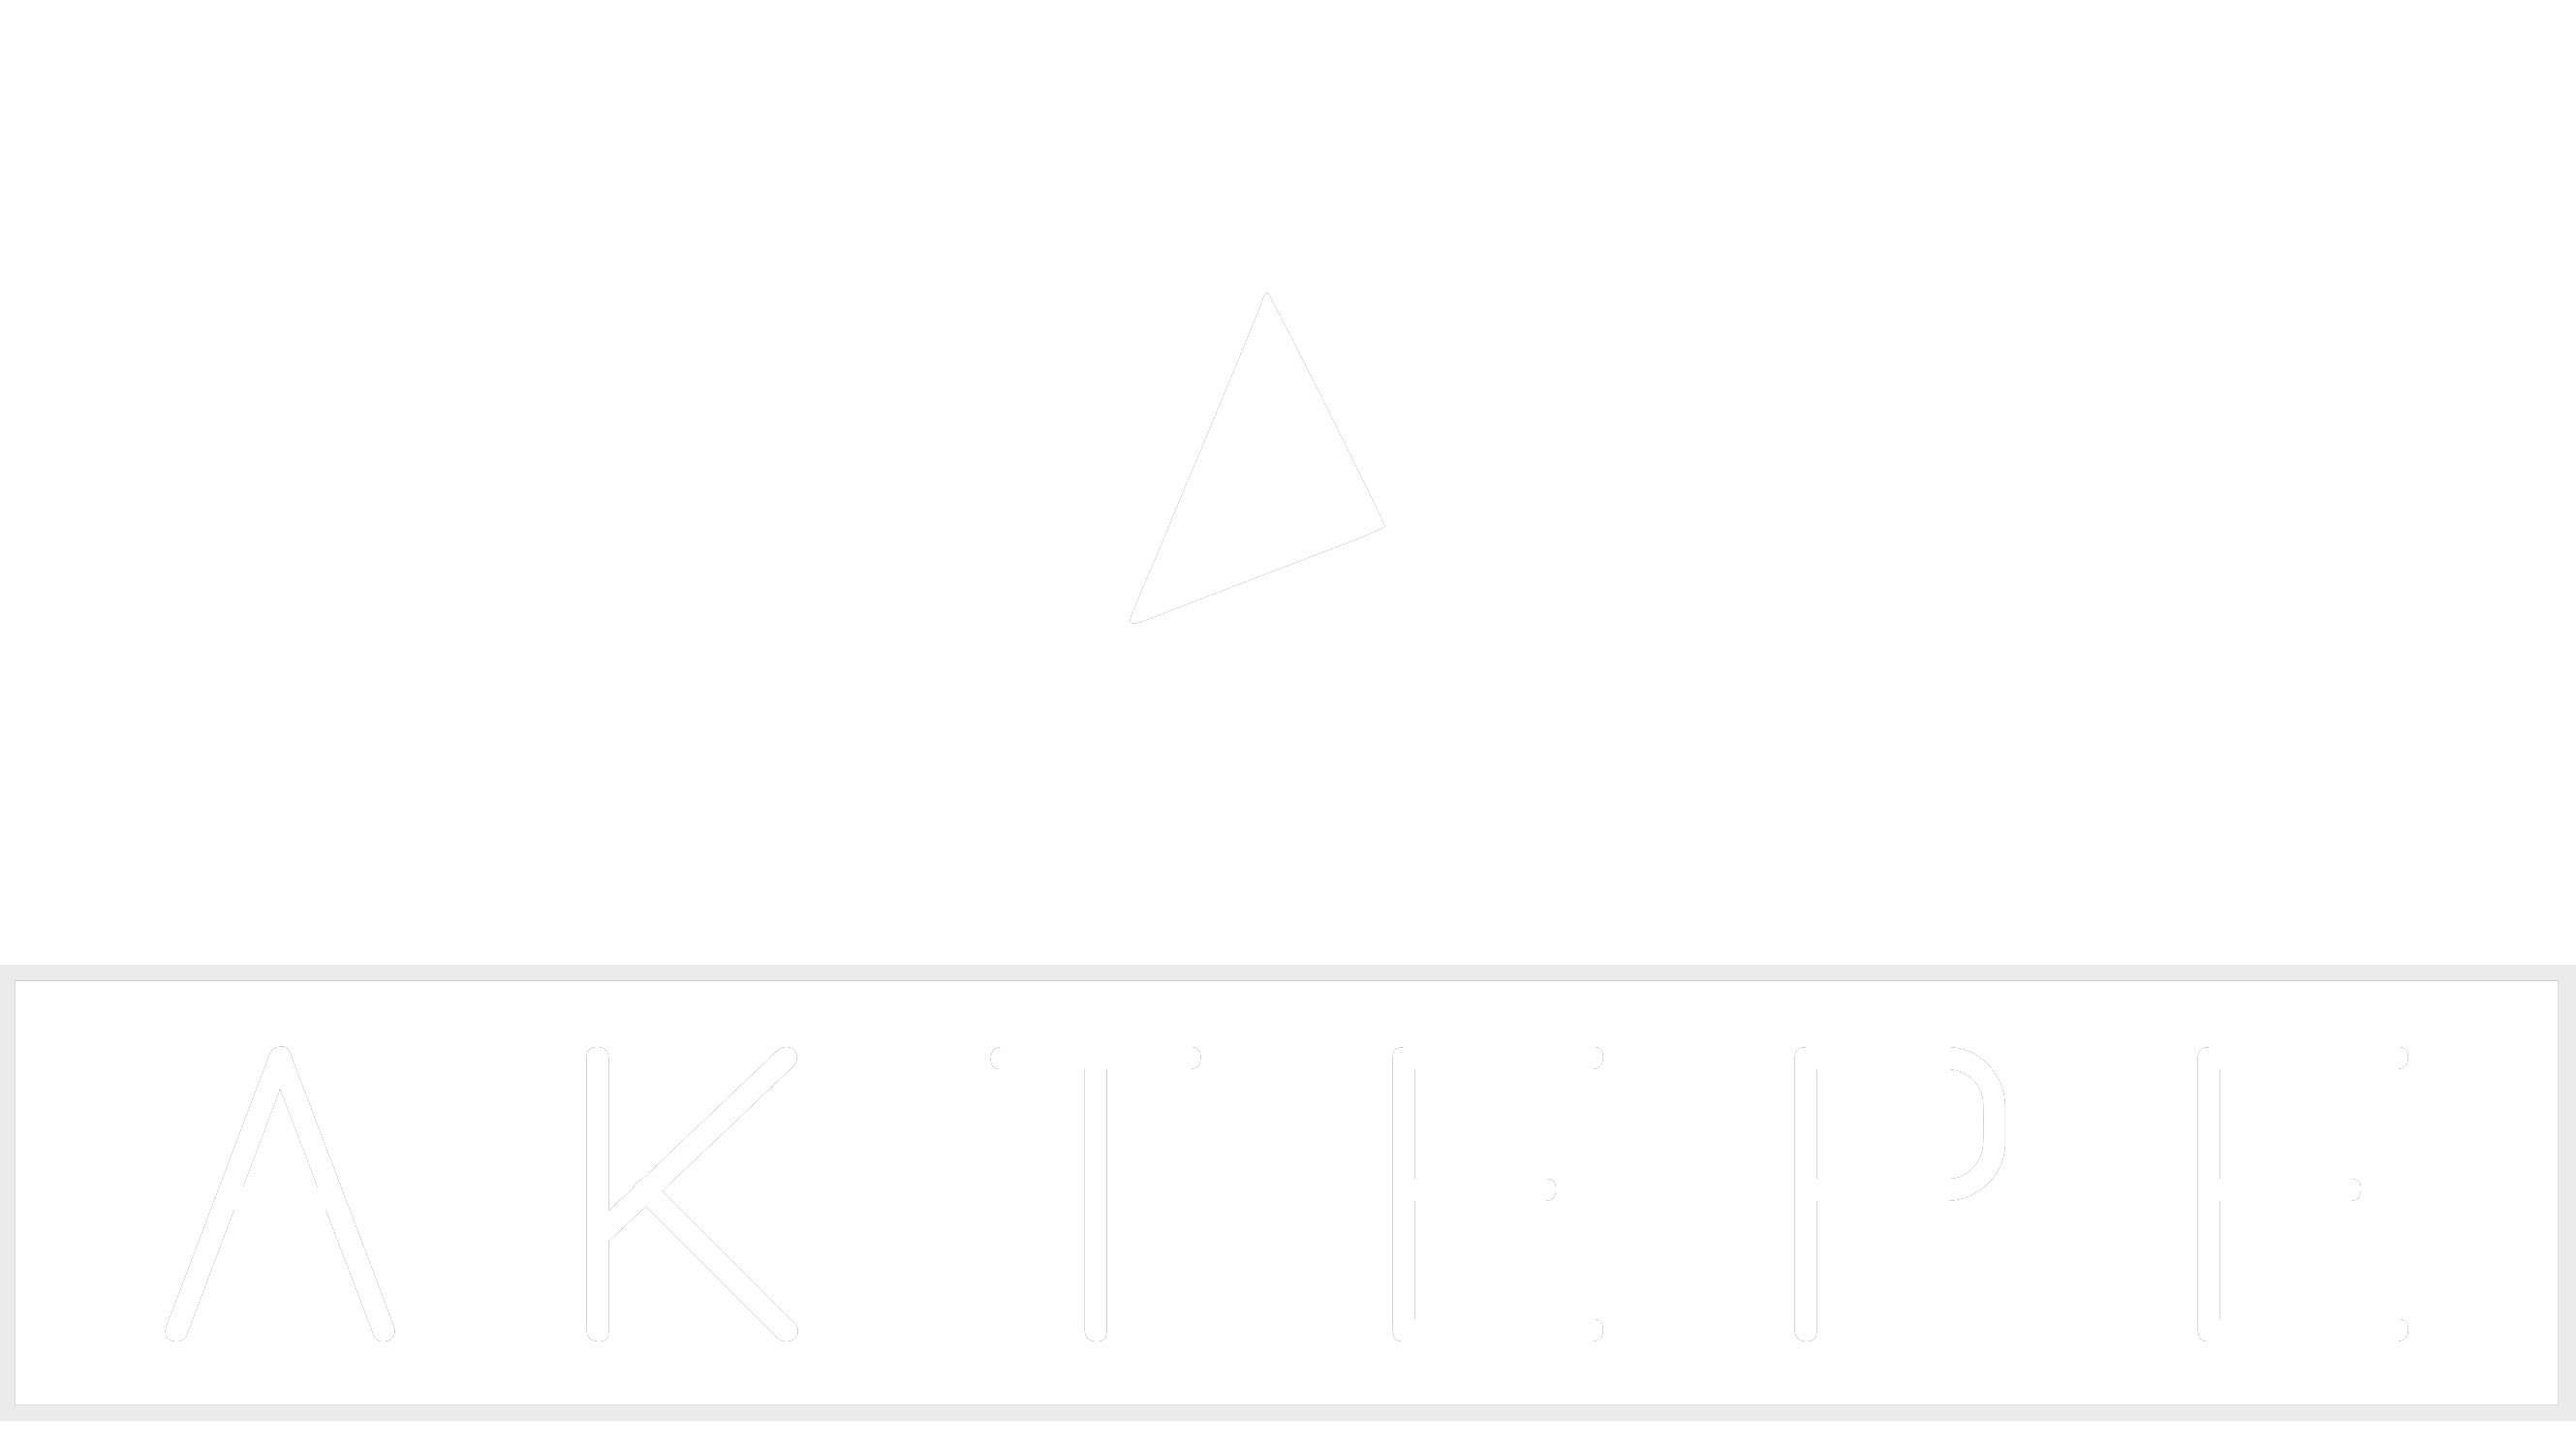 KABLO KİTLERİ - Aktepe Shop - Oto Müzik Görüntü Navigasyon Sistemleri ve Teyp Çerçevesi Satış Merkezi